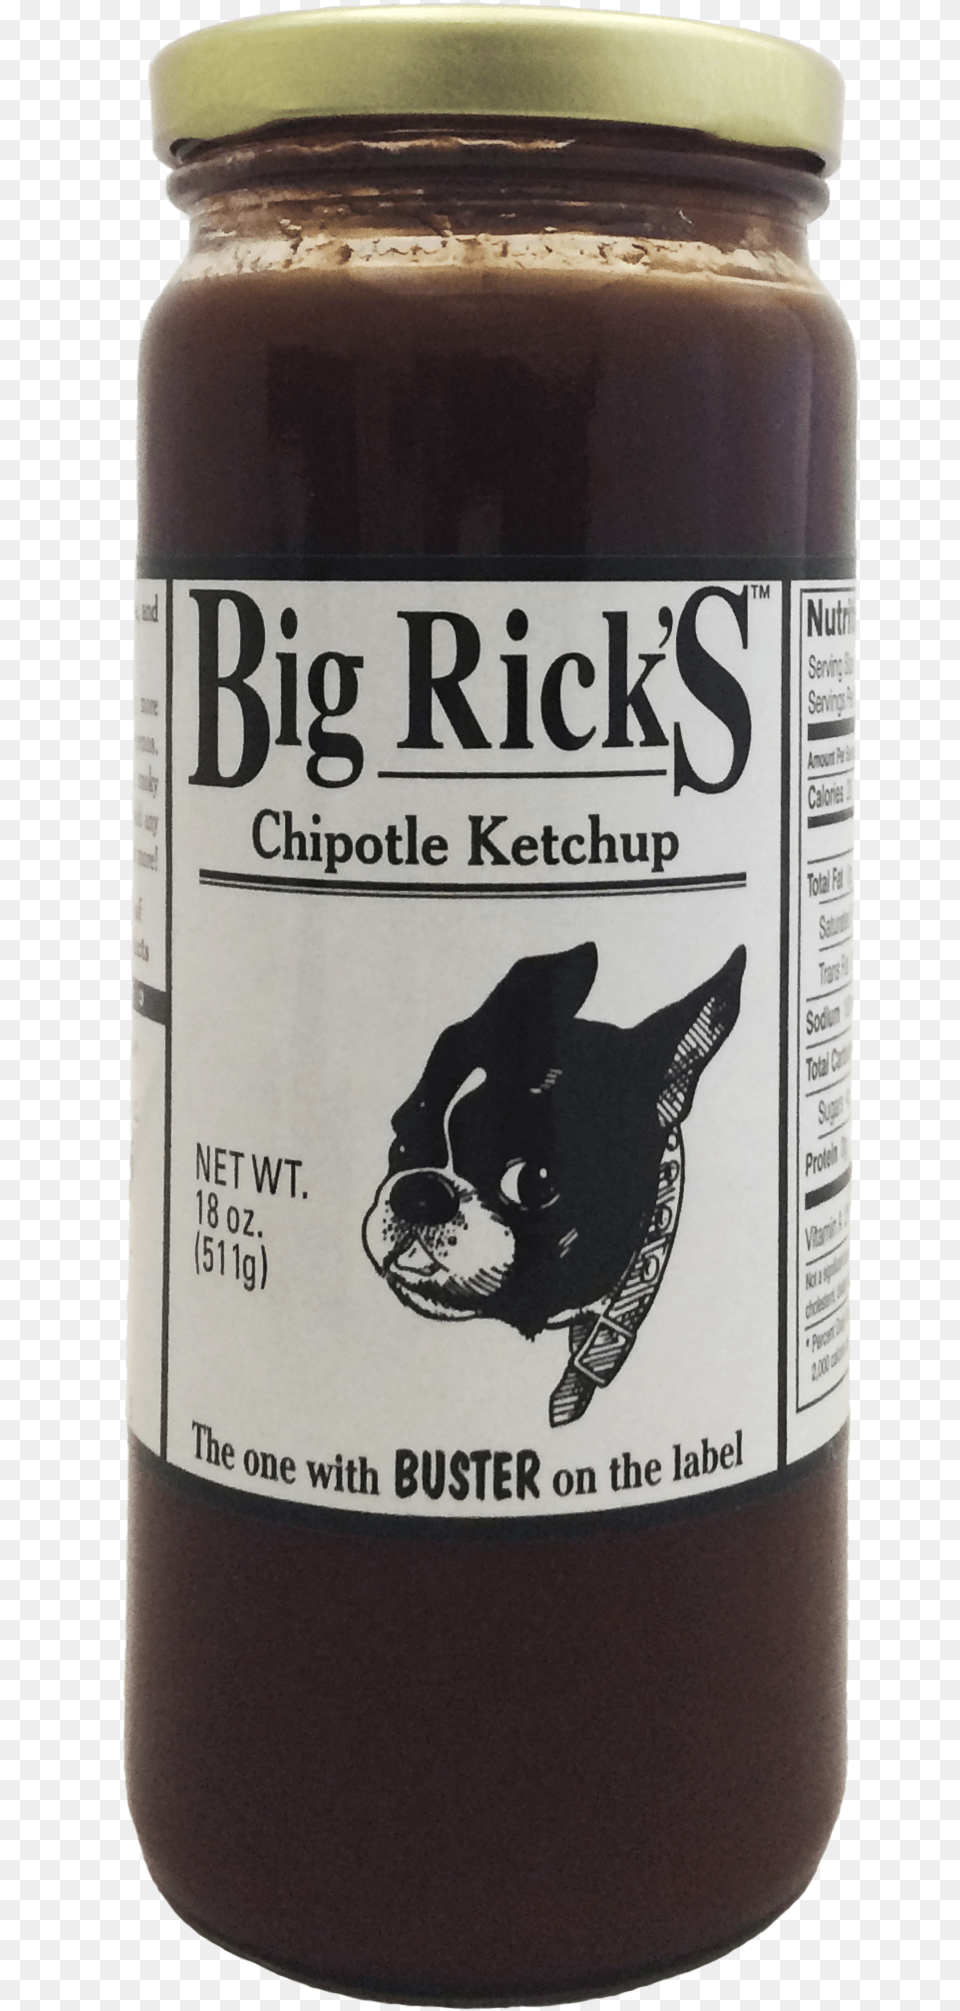 Big Rick39s Chipotle Ketchup Has A Smoky Zingy Flavor Big Rick39s Chipotle Ketchup, Alcohol, Beer, Beverage, Animal Png Image